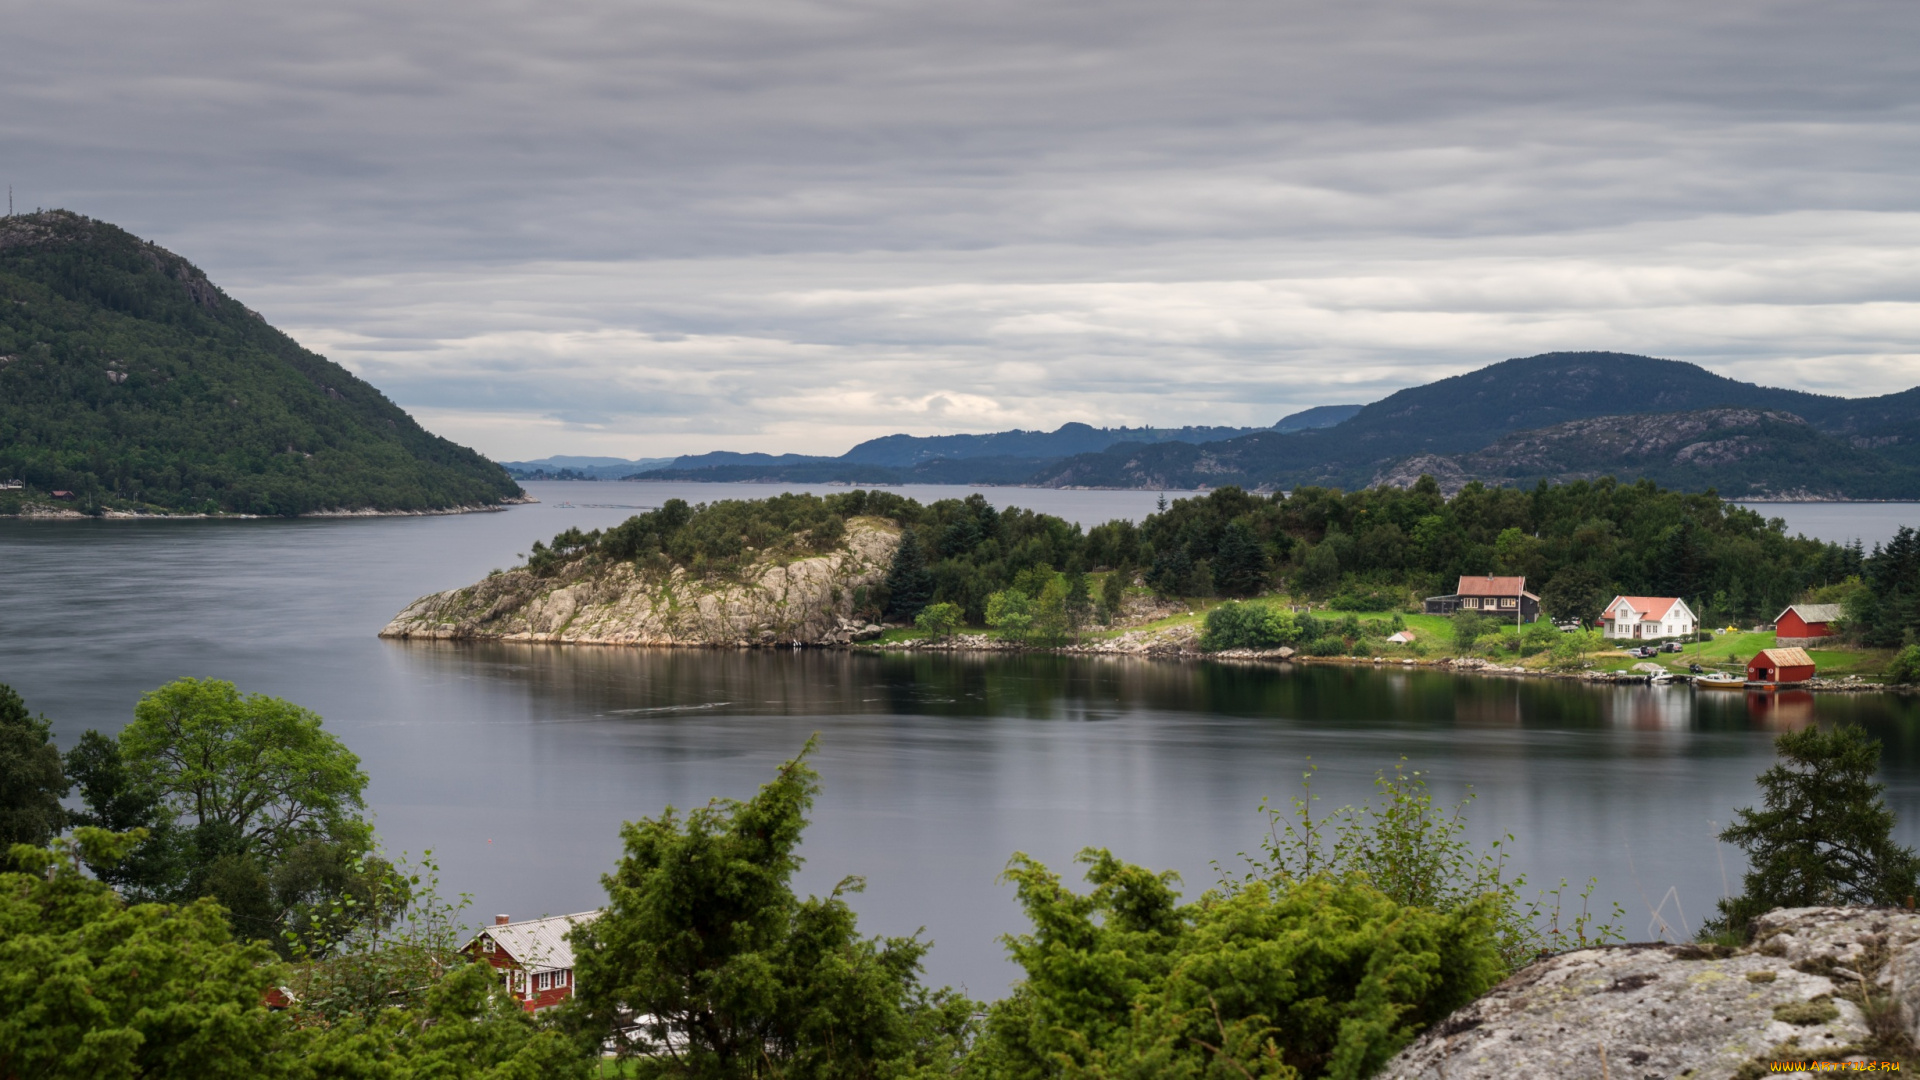 норвегия, природа, побережье, холм, деревья, дома, острова, водоем